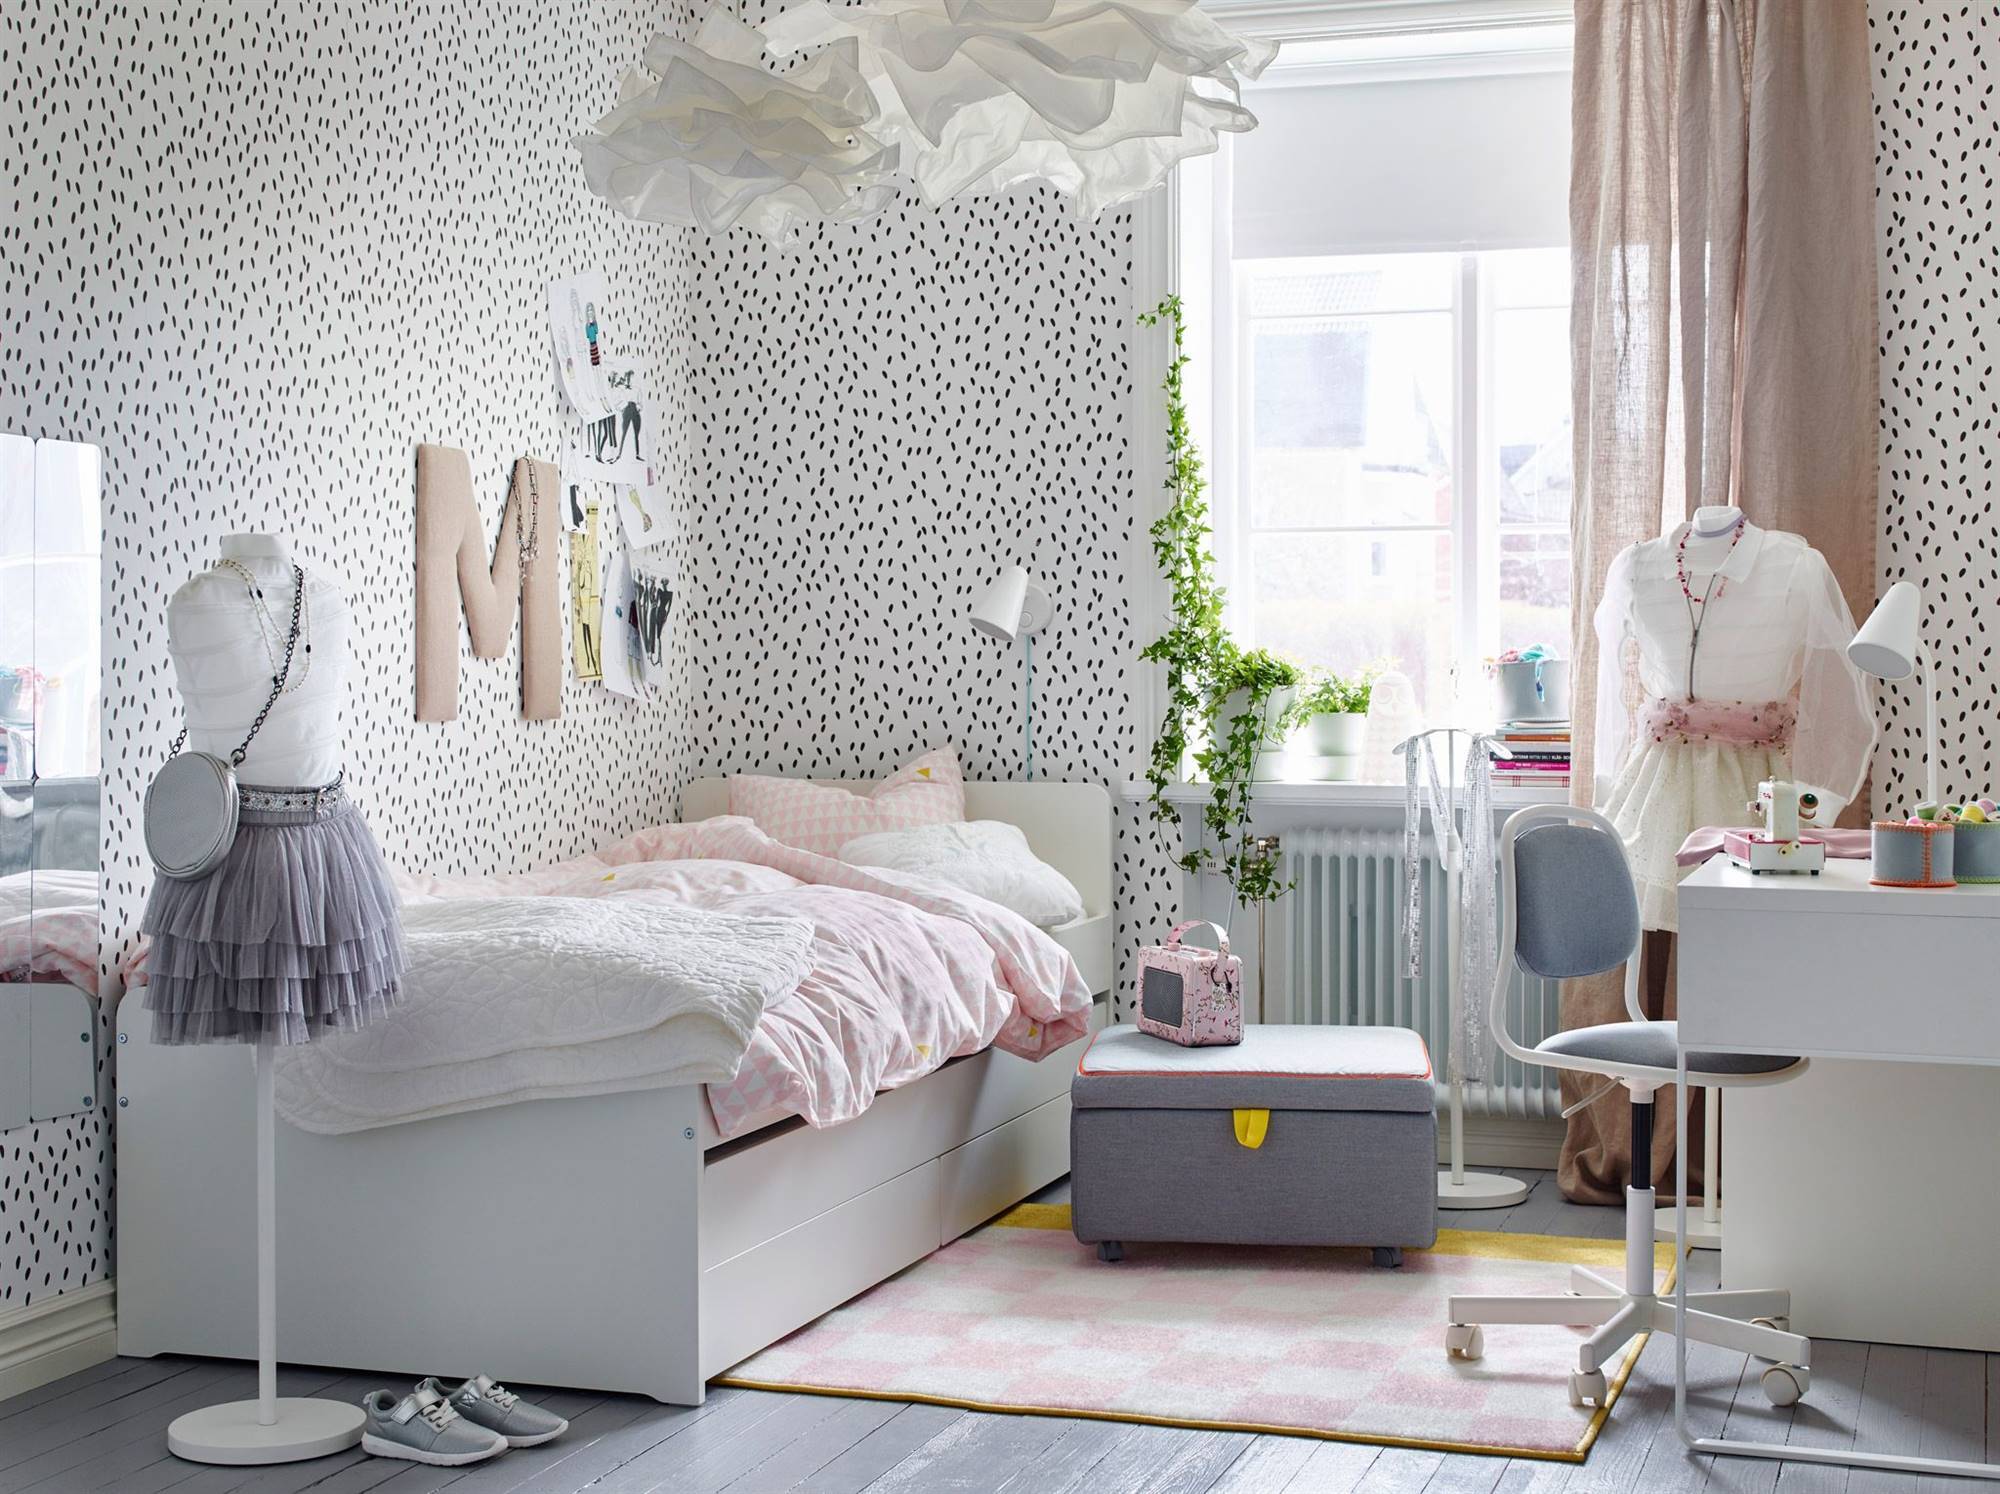 Dormitorio juvenil de IKEA con cama nido SLÄKT y papel pintado con puntitos